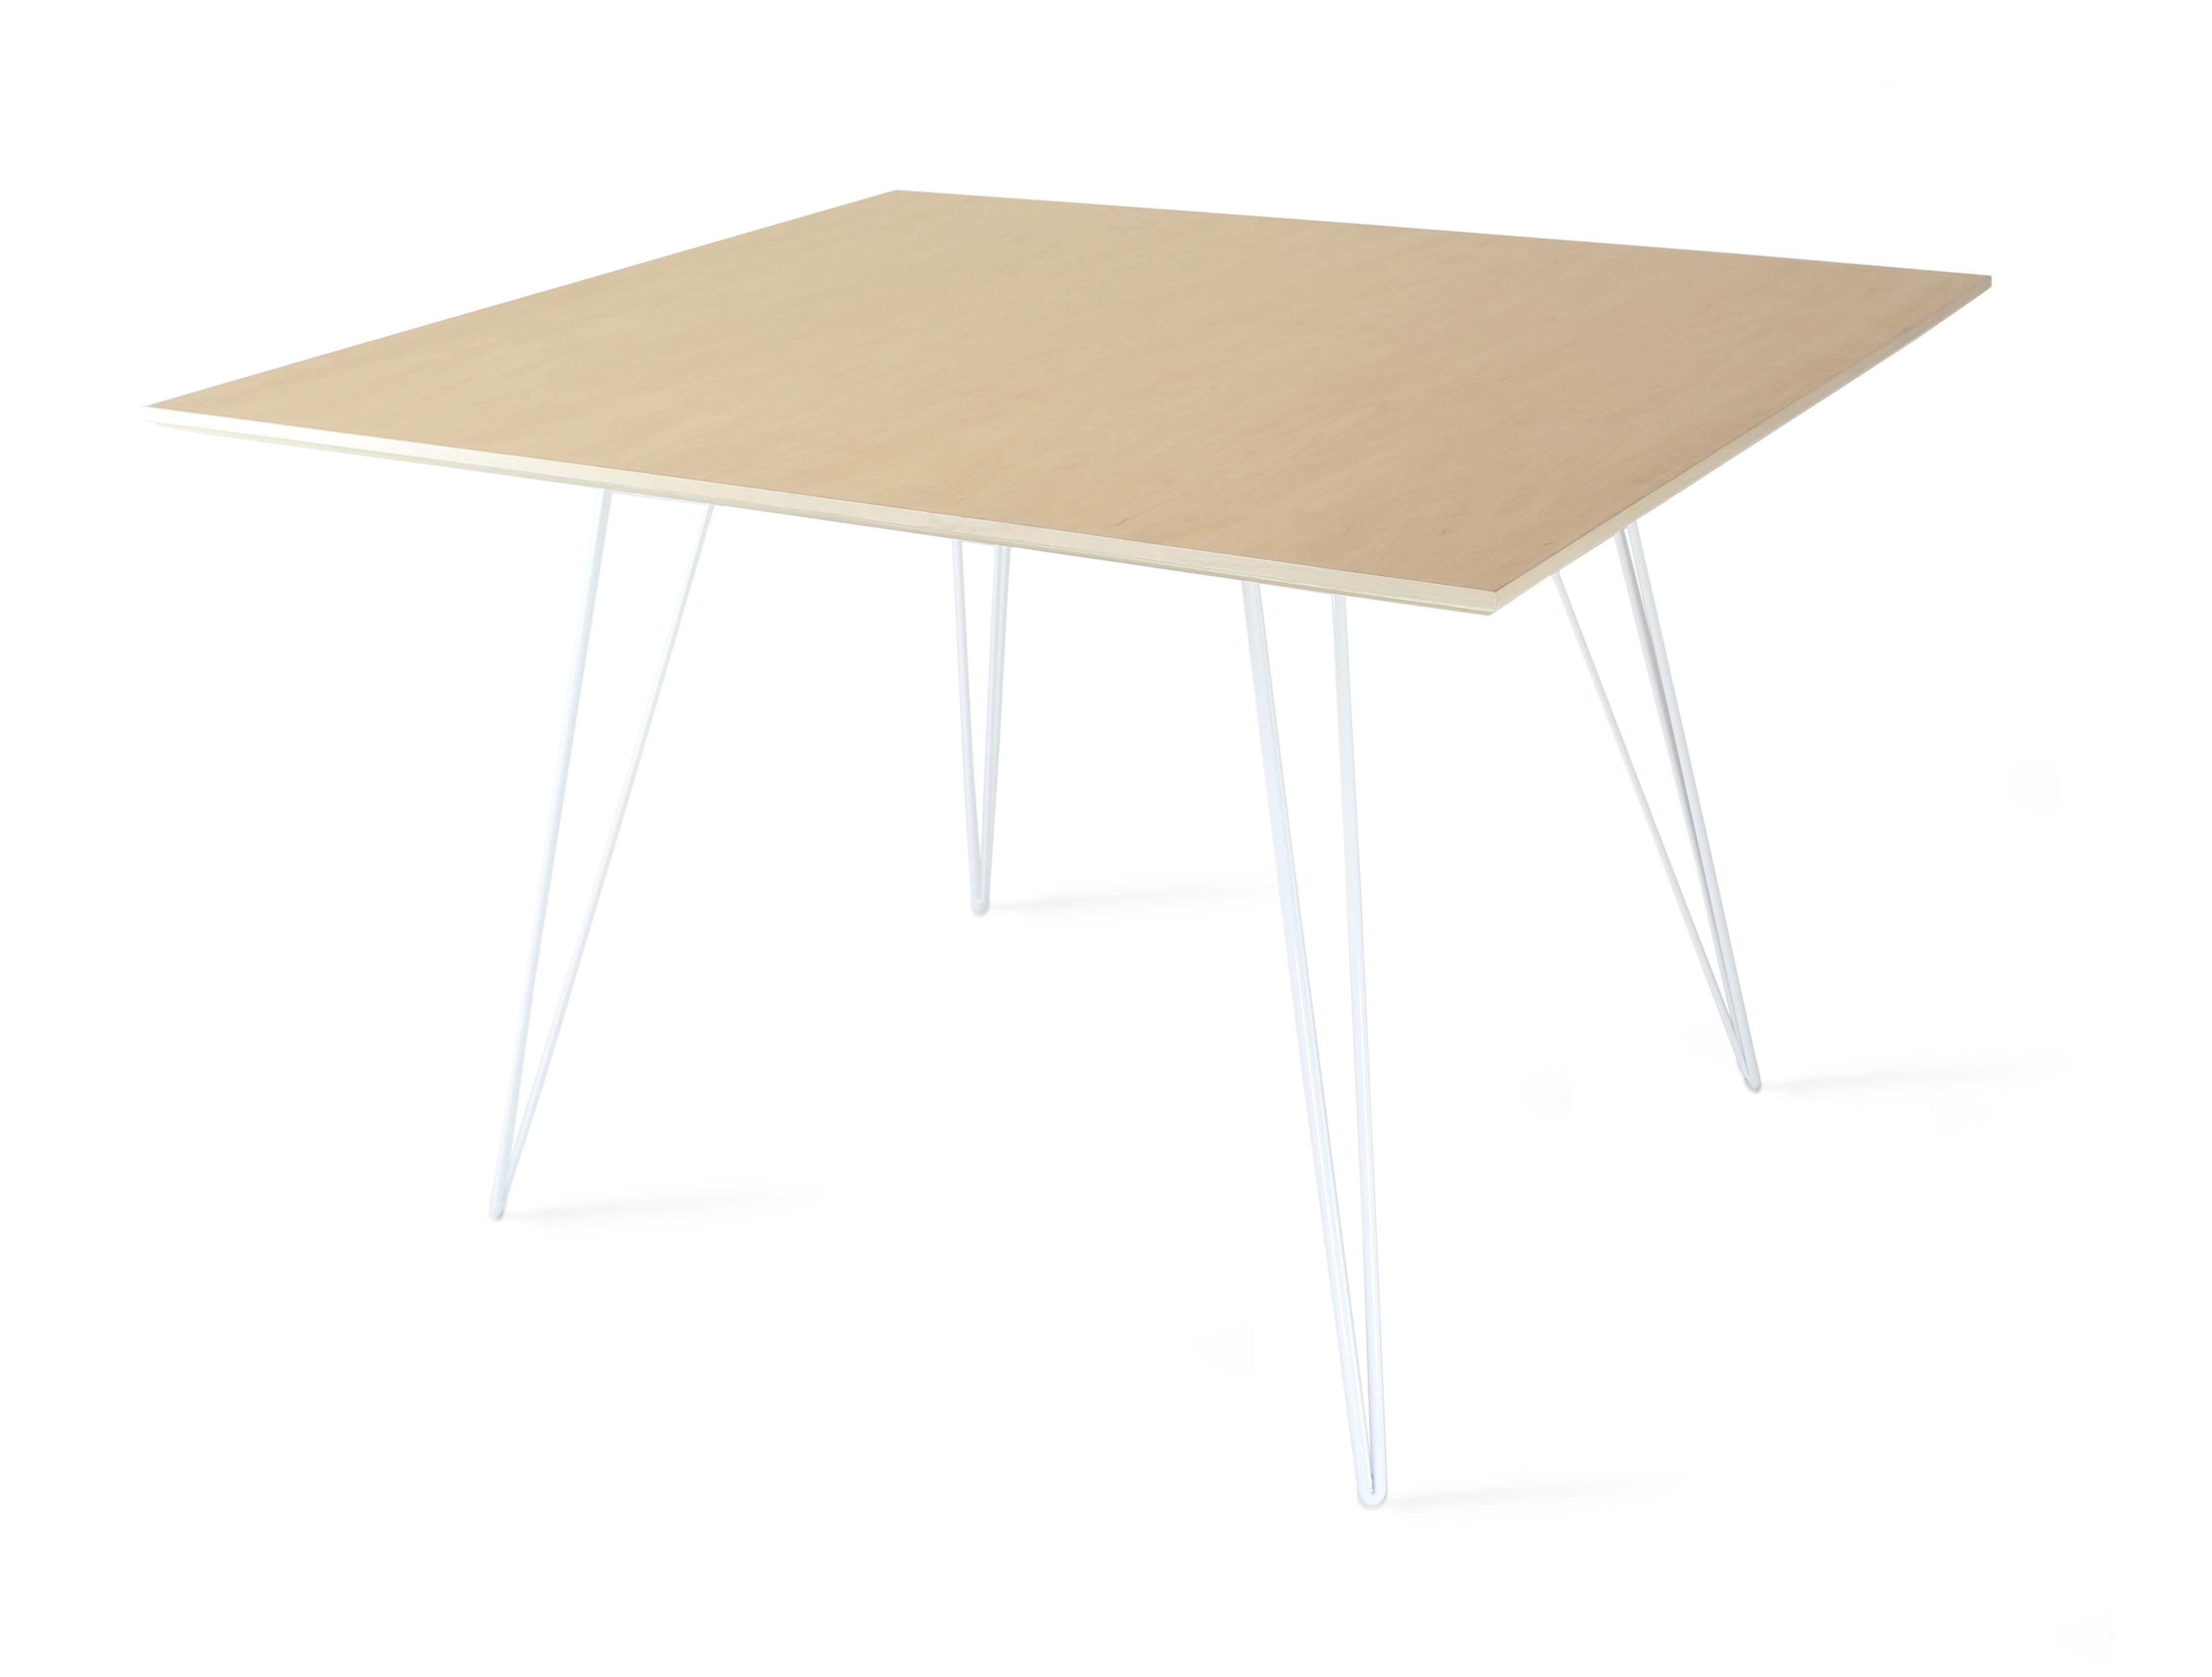 Ein schlanker, eleganter und leichter Ahorntisch, der in Form, Größe und Farbe individuell gestaltet werden kann. Dieses handgefertigte Möbelstück verbindet weiße, industrielle Haarnadelbeine mit einer abgeschrägten Holzplatte. Die unregelmäßige